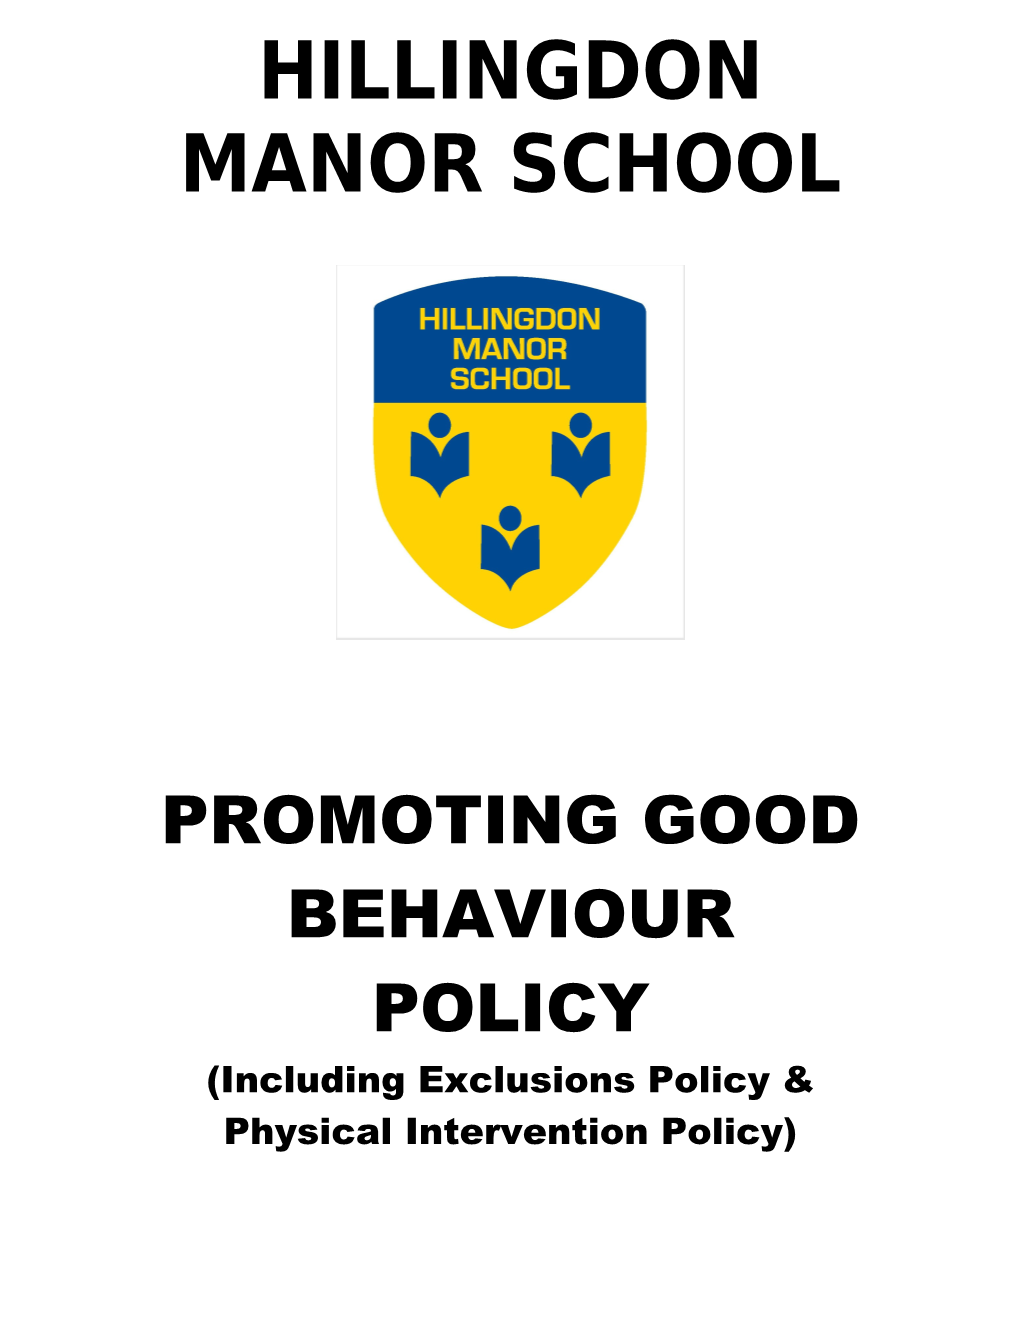 Hillingdon Manor School